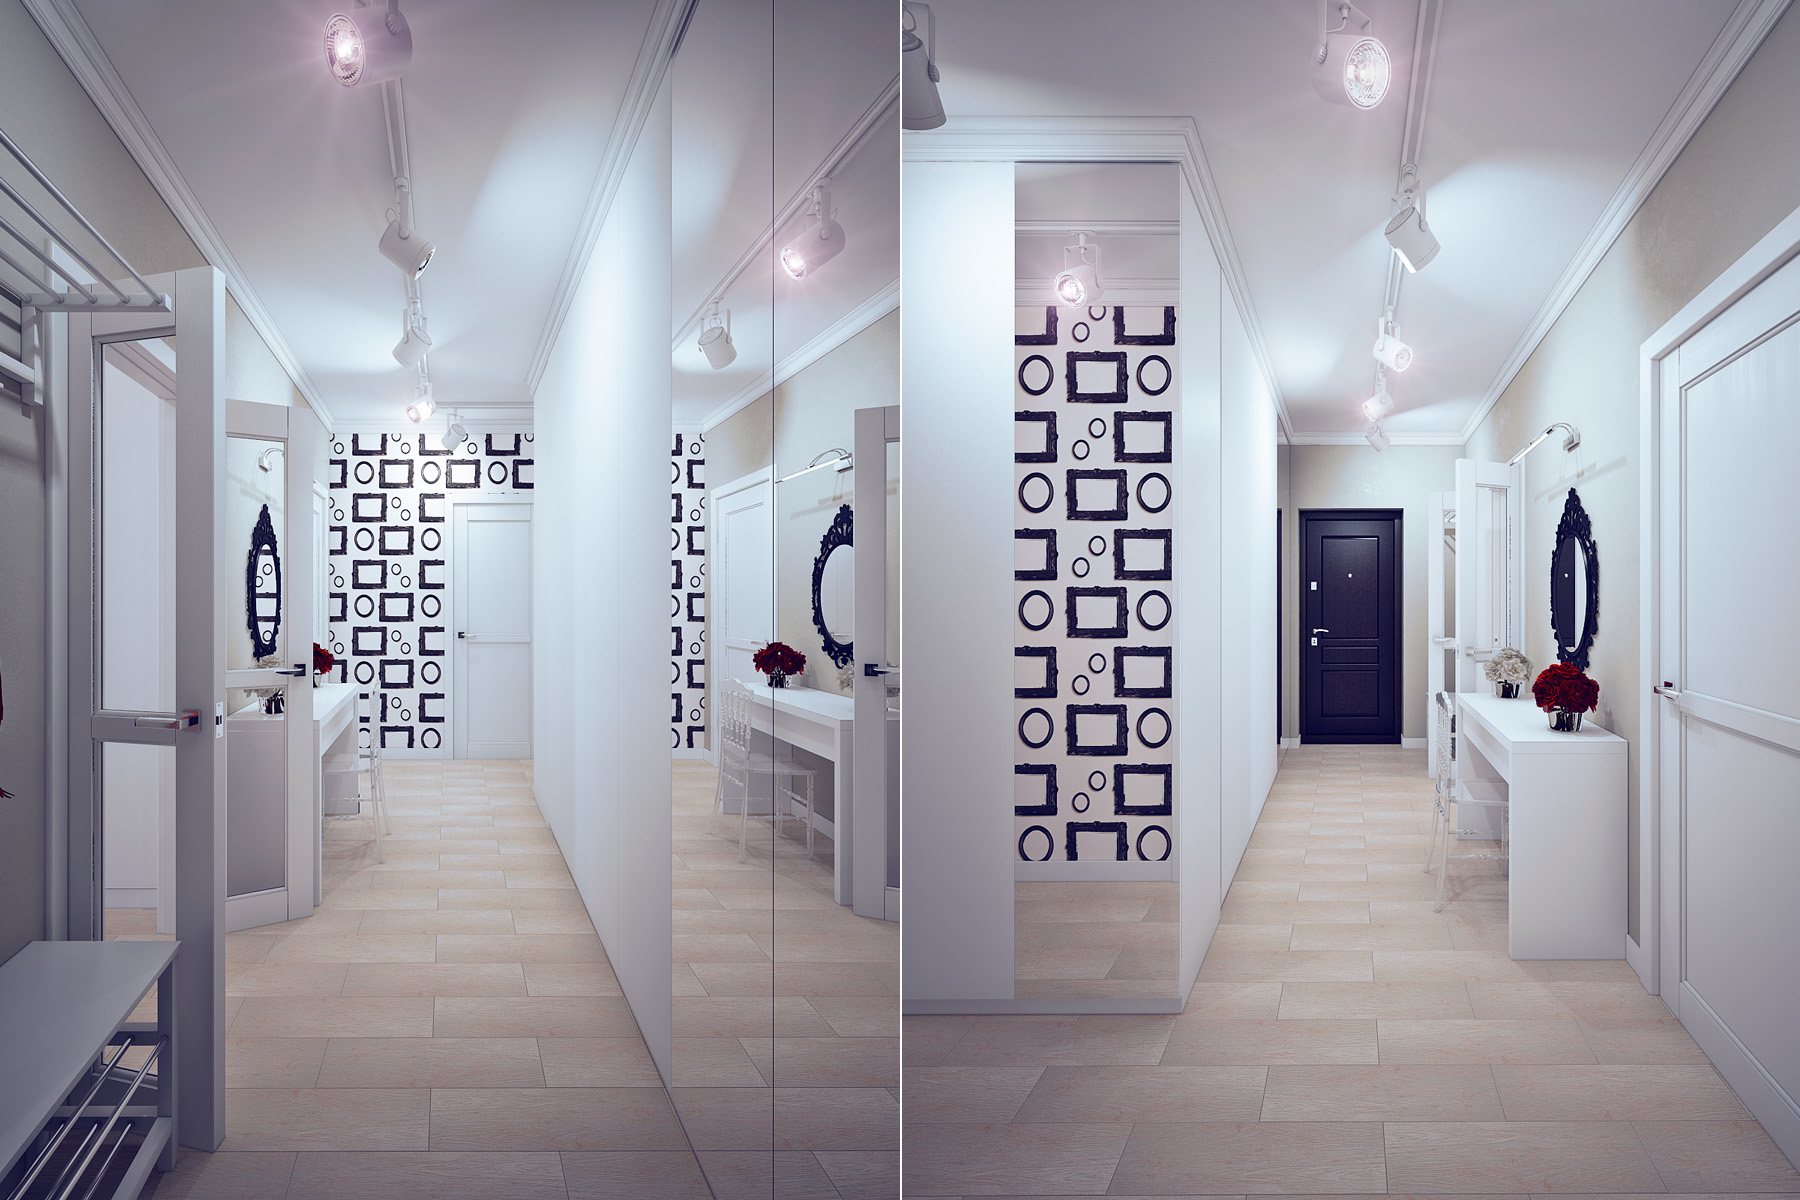 Unique hallway design